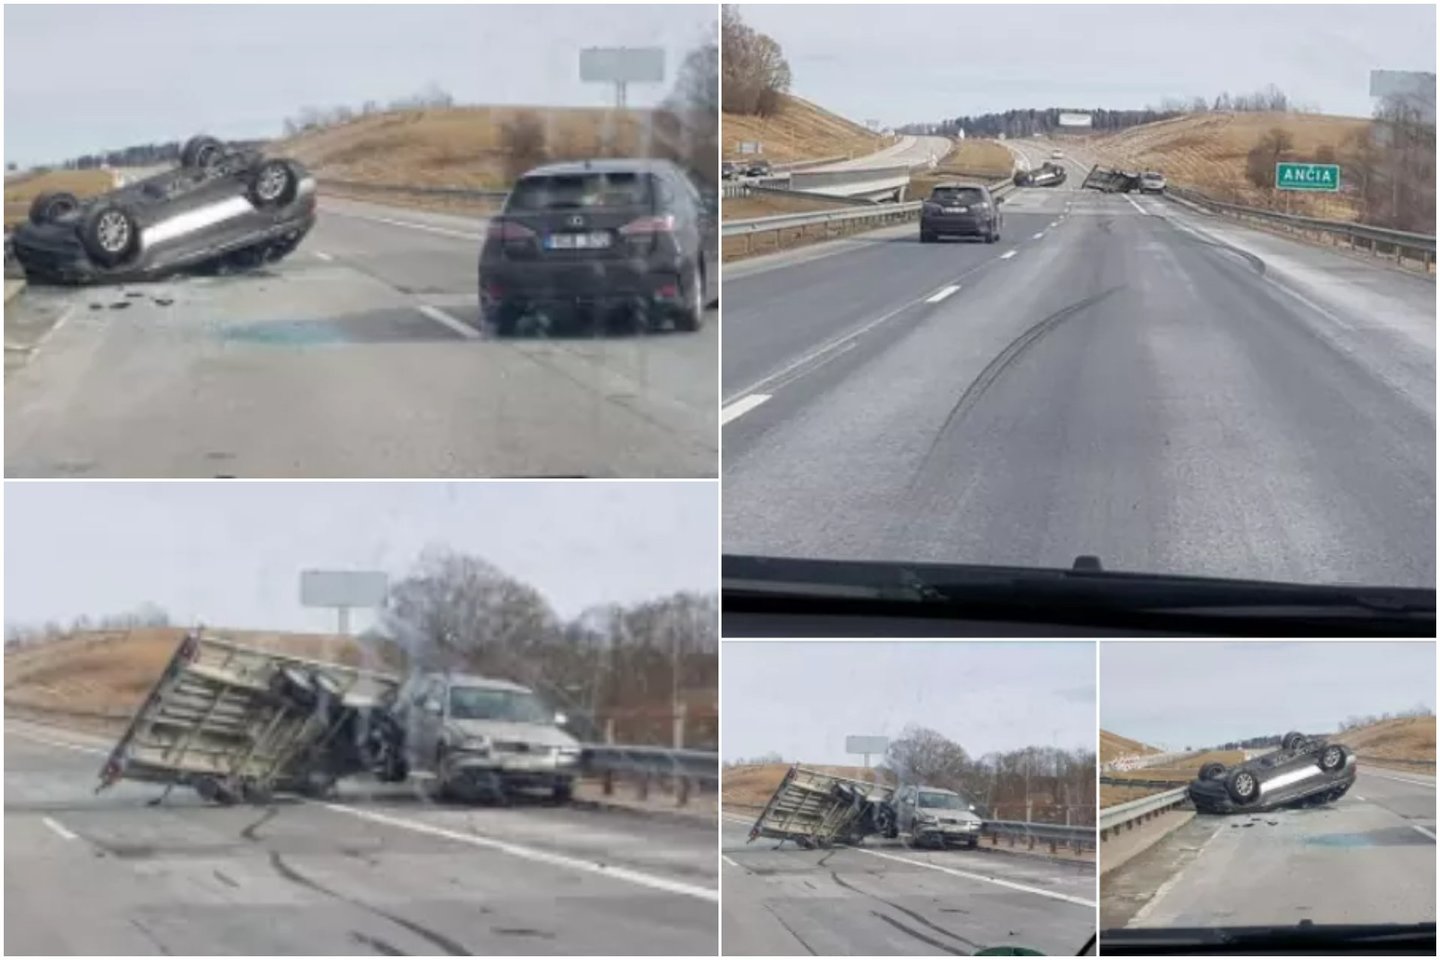  Greitkelyje netoli Kryžkalnio iškritęs iš priekabos BMW apsivertė, per avariją buvo apgadintas ir "VW Passat". <br> Feisbuko (Klaipėdos reidai II) nuotr.